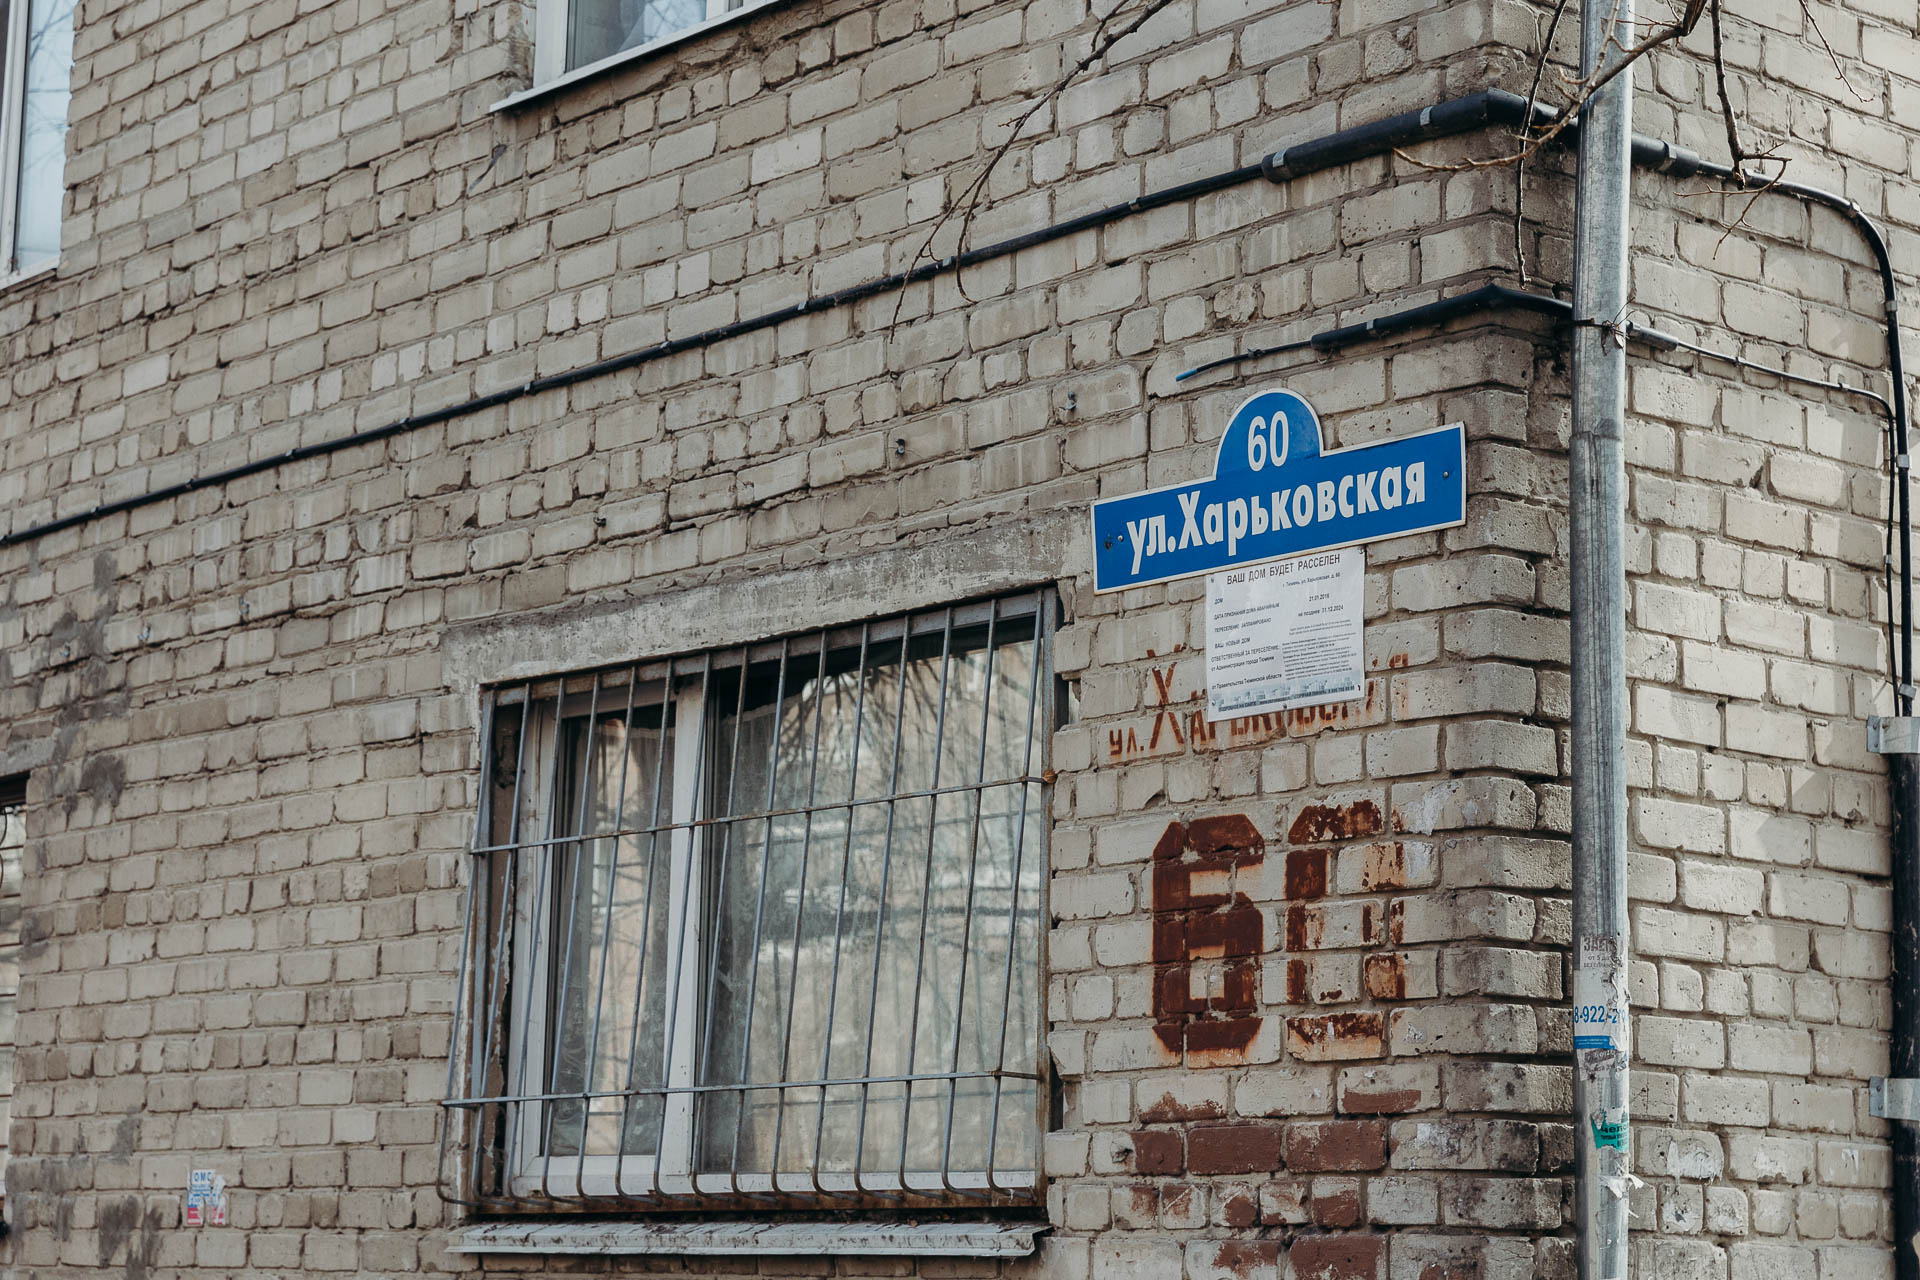 Уведомление на Харьковской, 60 говорит о планах расселить дом до 31 декабря 2024 года